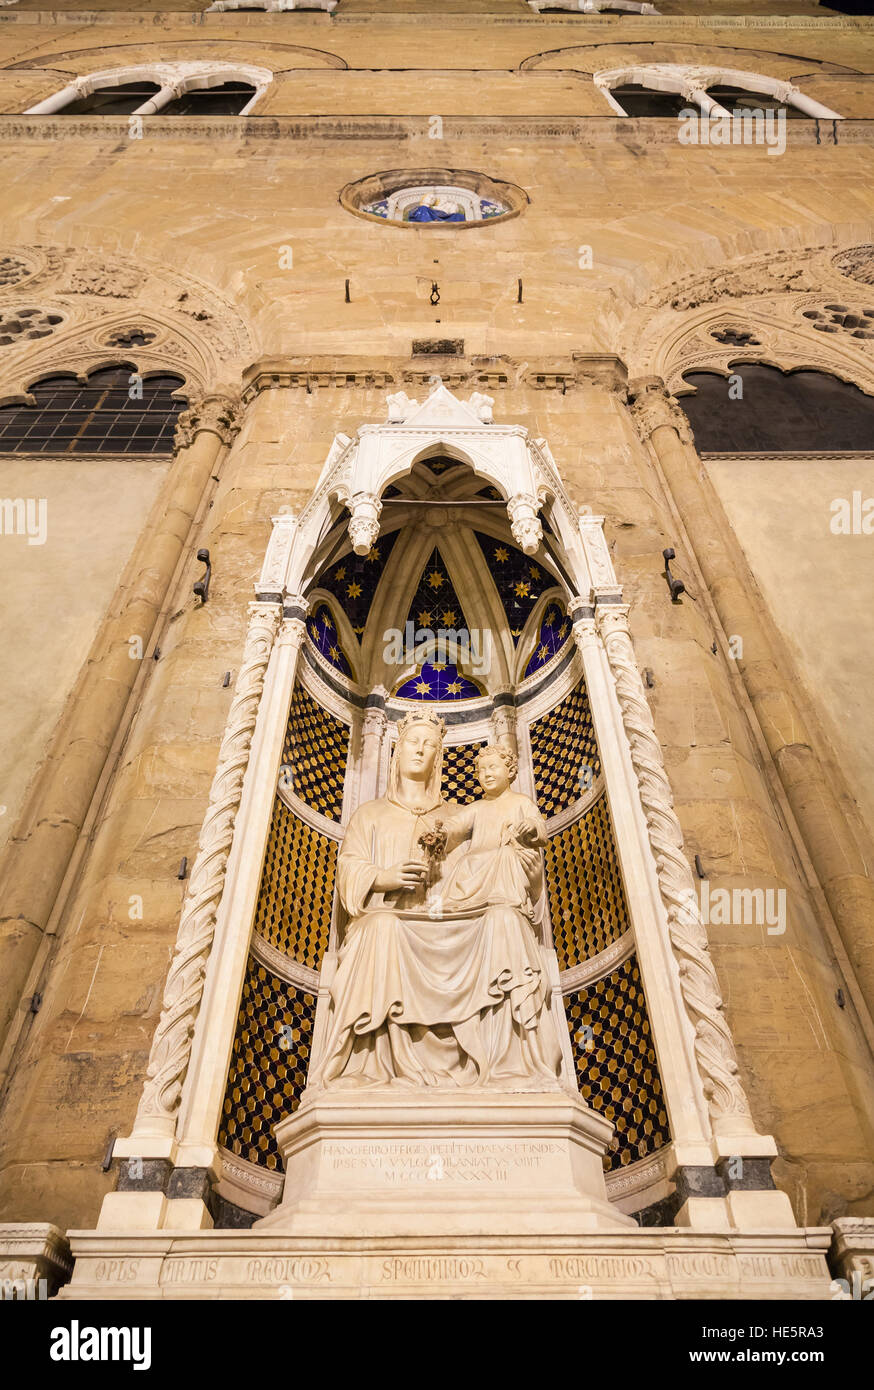 Voyage d'Italie - Façade de l'église Orsanmichele médiévale avec statue (Vierge de la Rose par le sculpteur Pietro di Giovanni Tedesco) dans la ville de Florence dans Banque D'Images